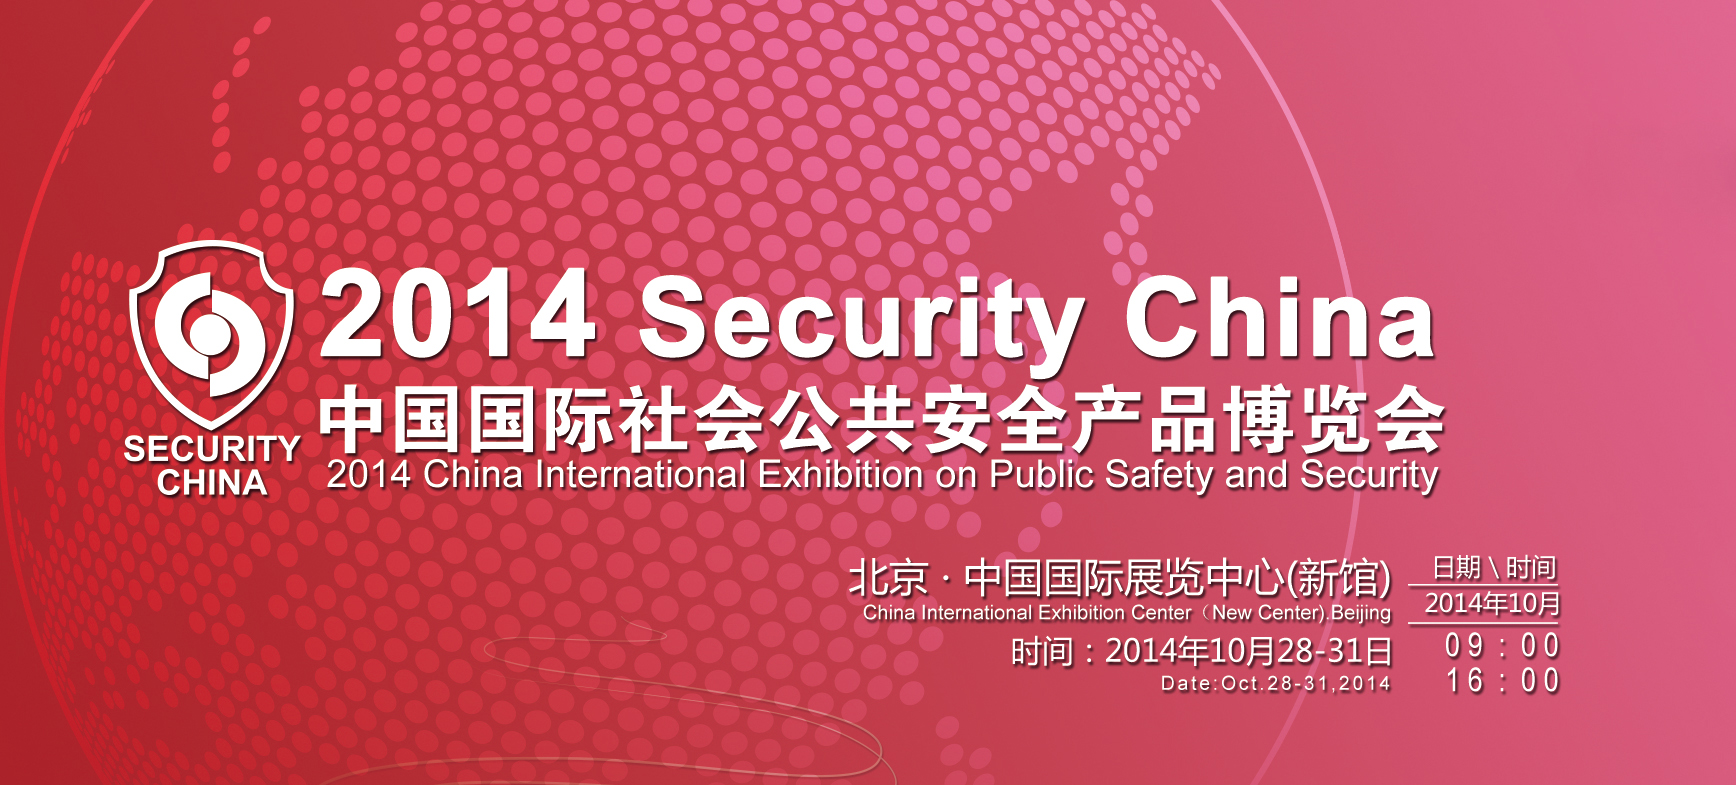 我公司将参加第十二届中国国际社会公共安全产品博览会